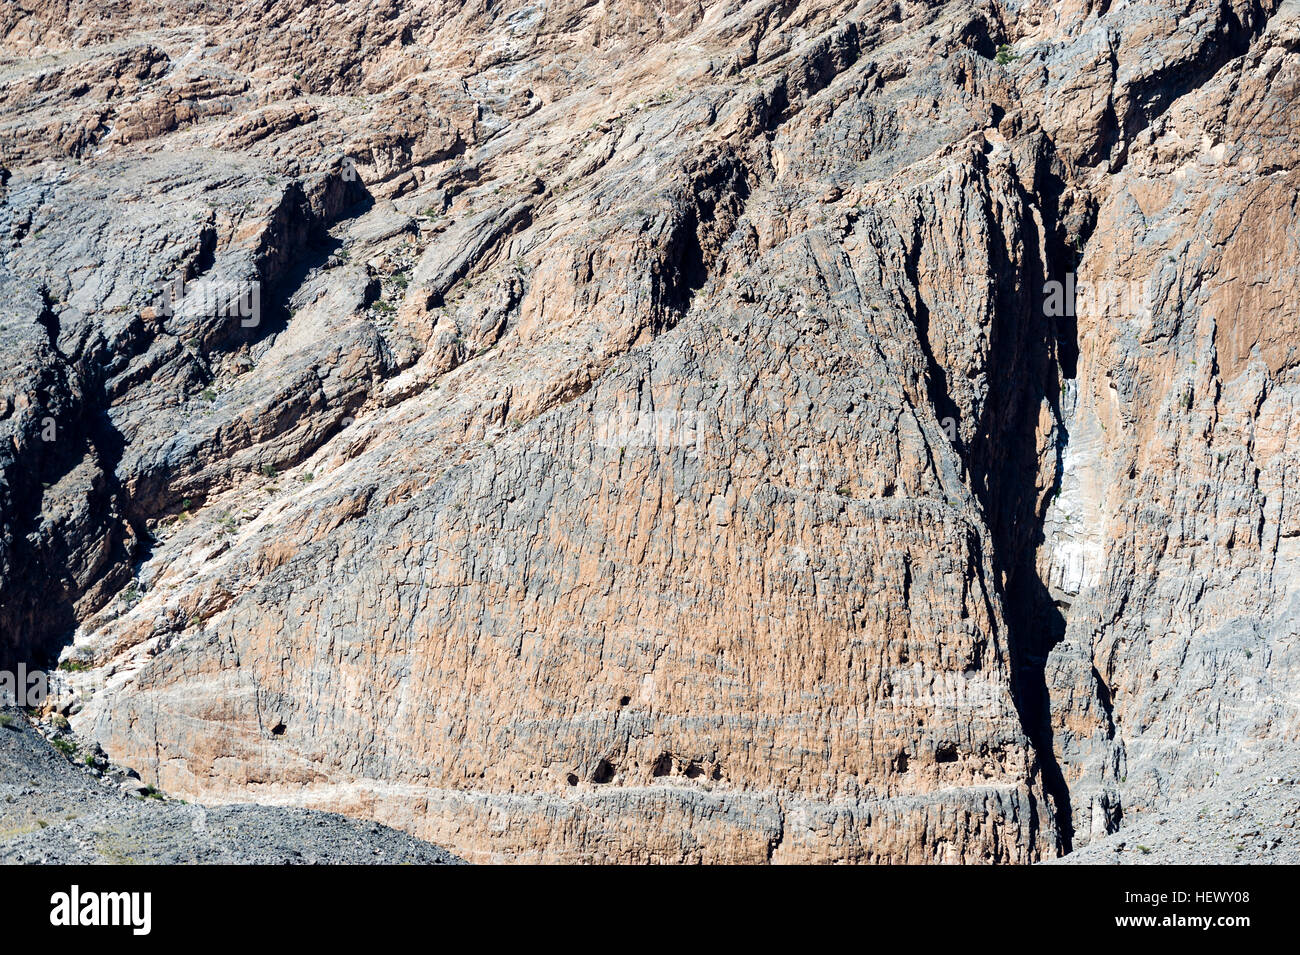 Höhlen und Erosion auf der Klippe Gesicht eines felsigen Berges. Stockfoto